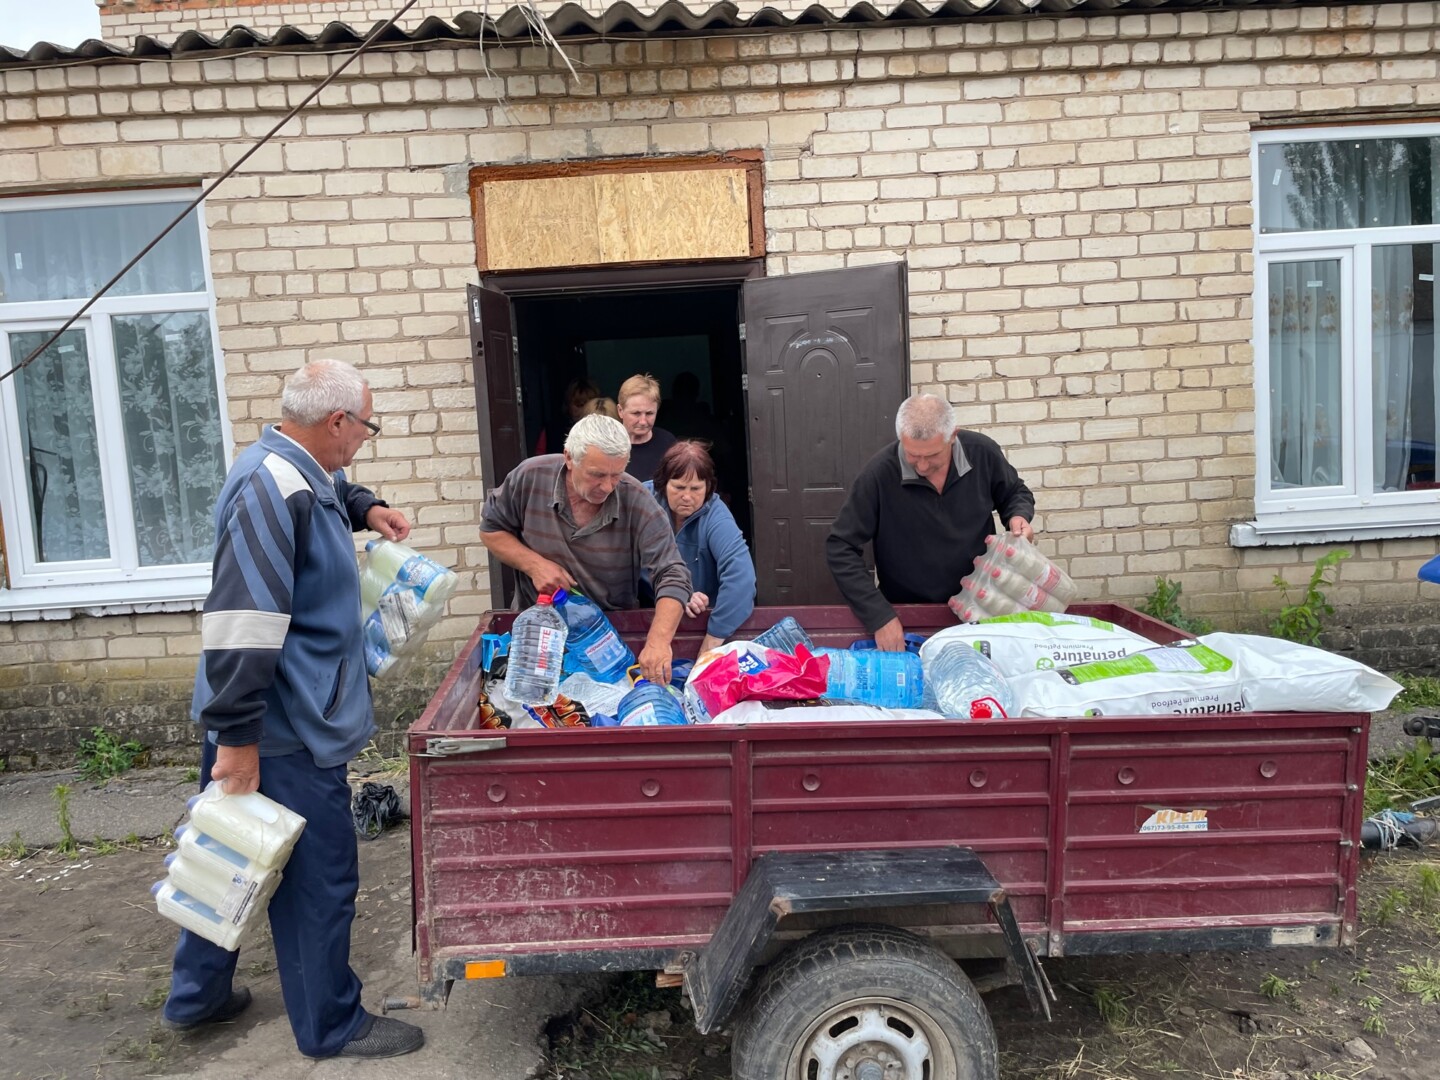 Sadovo gyventojai padėjo iškrauti atvežtą paramą, bet kartu baiminosi apšaudymo – išvakarėse atlėkusi bomba išvertė mokyklos tvorą. E. BUTRIMO nuotr. 